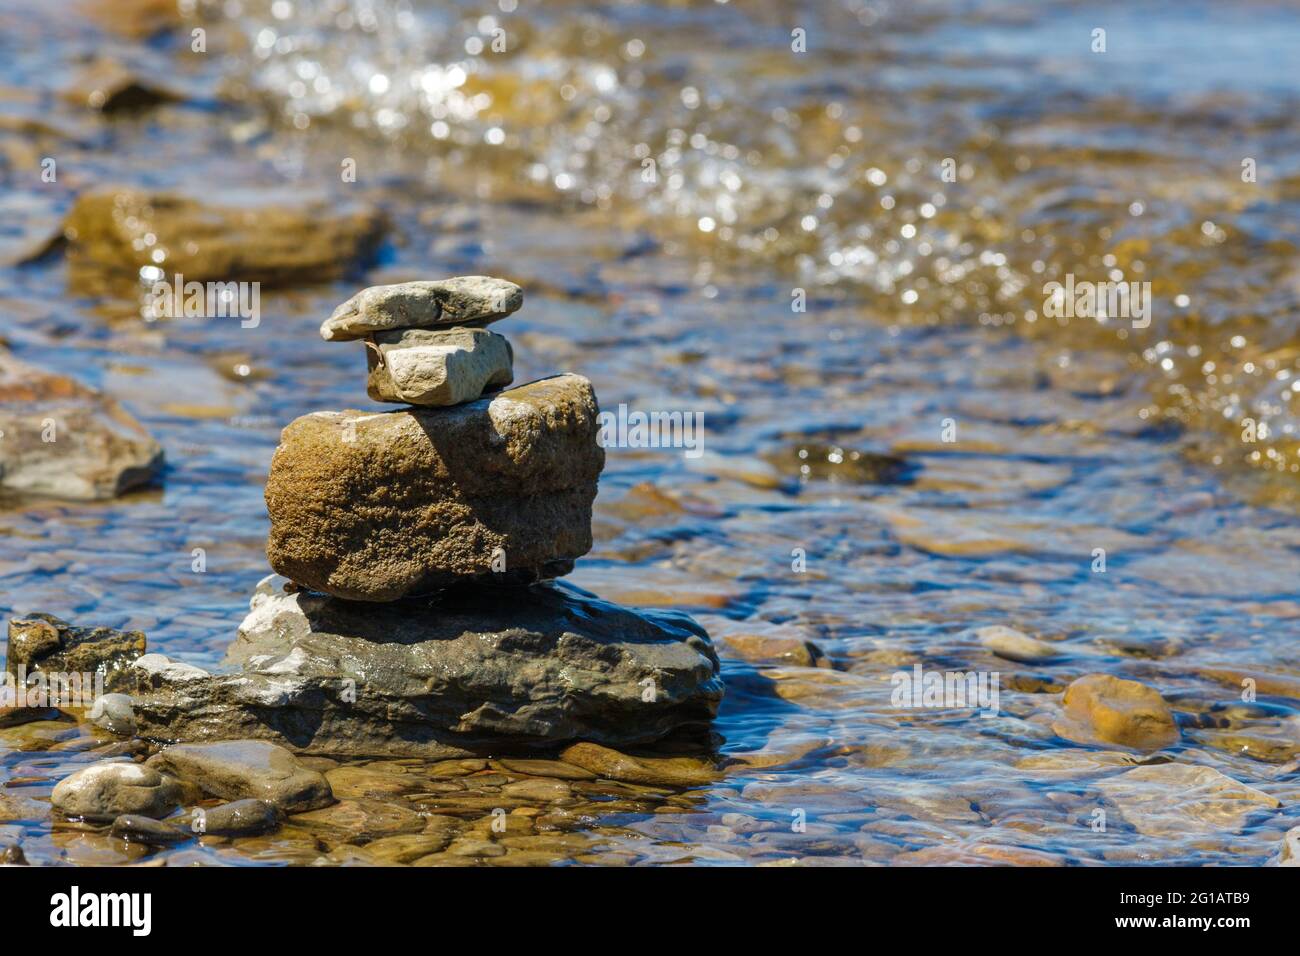 Le pietre sono equilibrate e accatastate l'una sull'altra nelle acque poco profonde di una spiaggia rocciosa al bordo di un fiume. Foto Stock